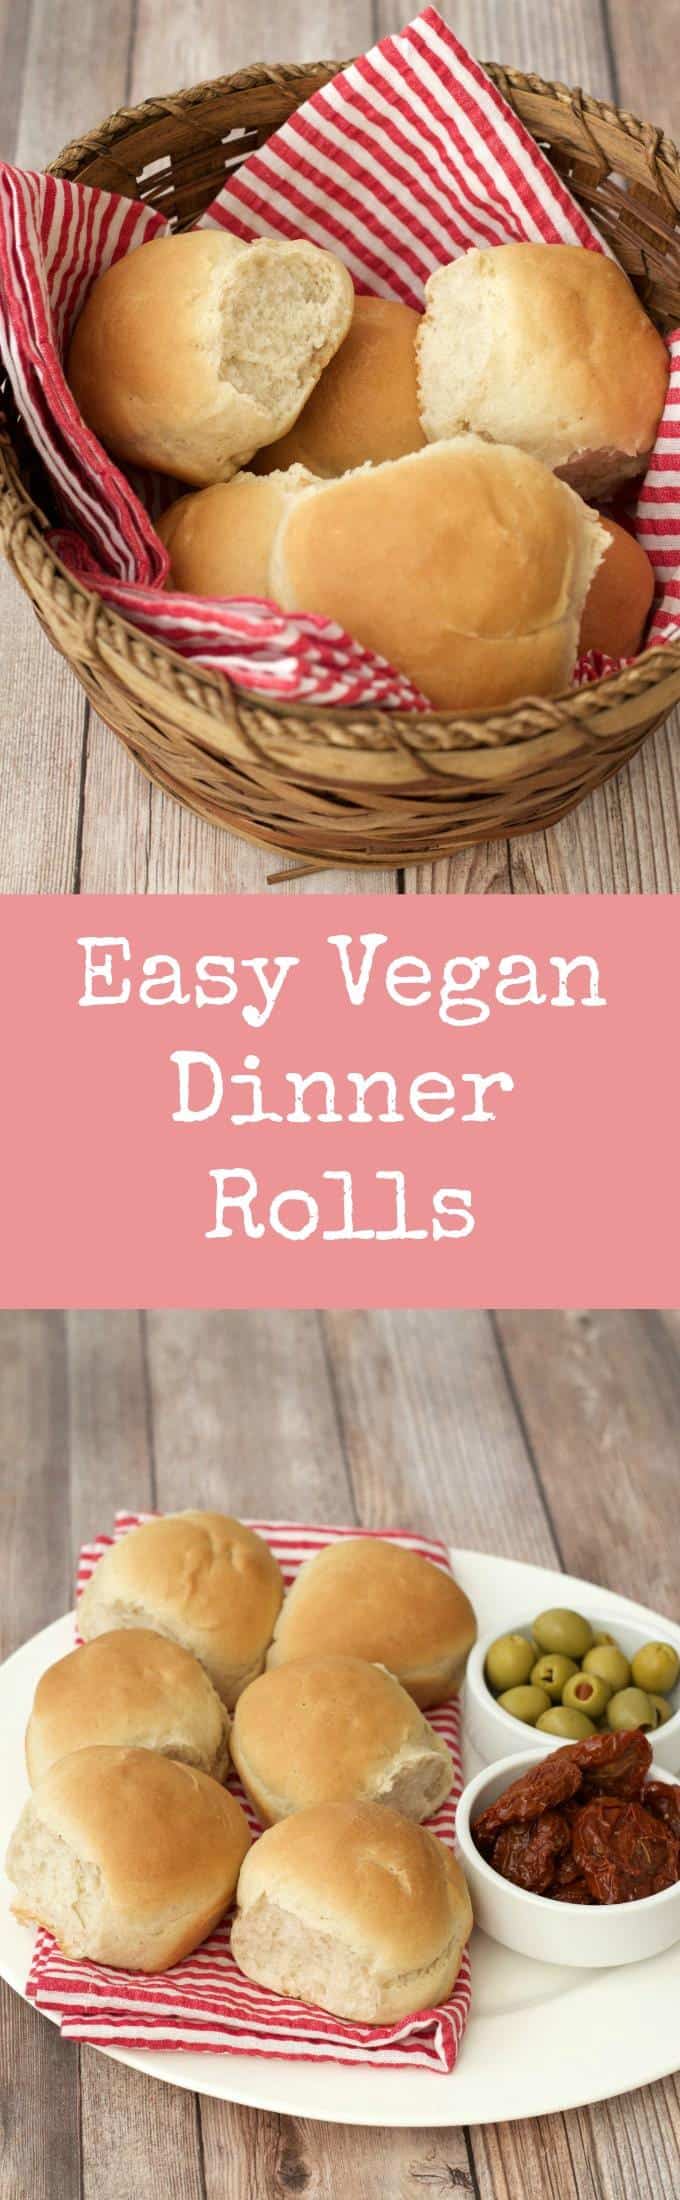 Easy Vegan Dinner Rolls #vegan #lovingitvegan #dinner #rolls #smallbatch #sides